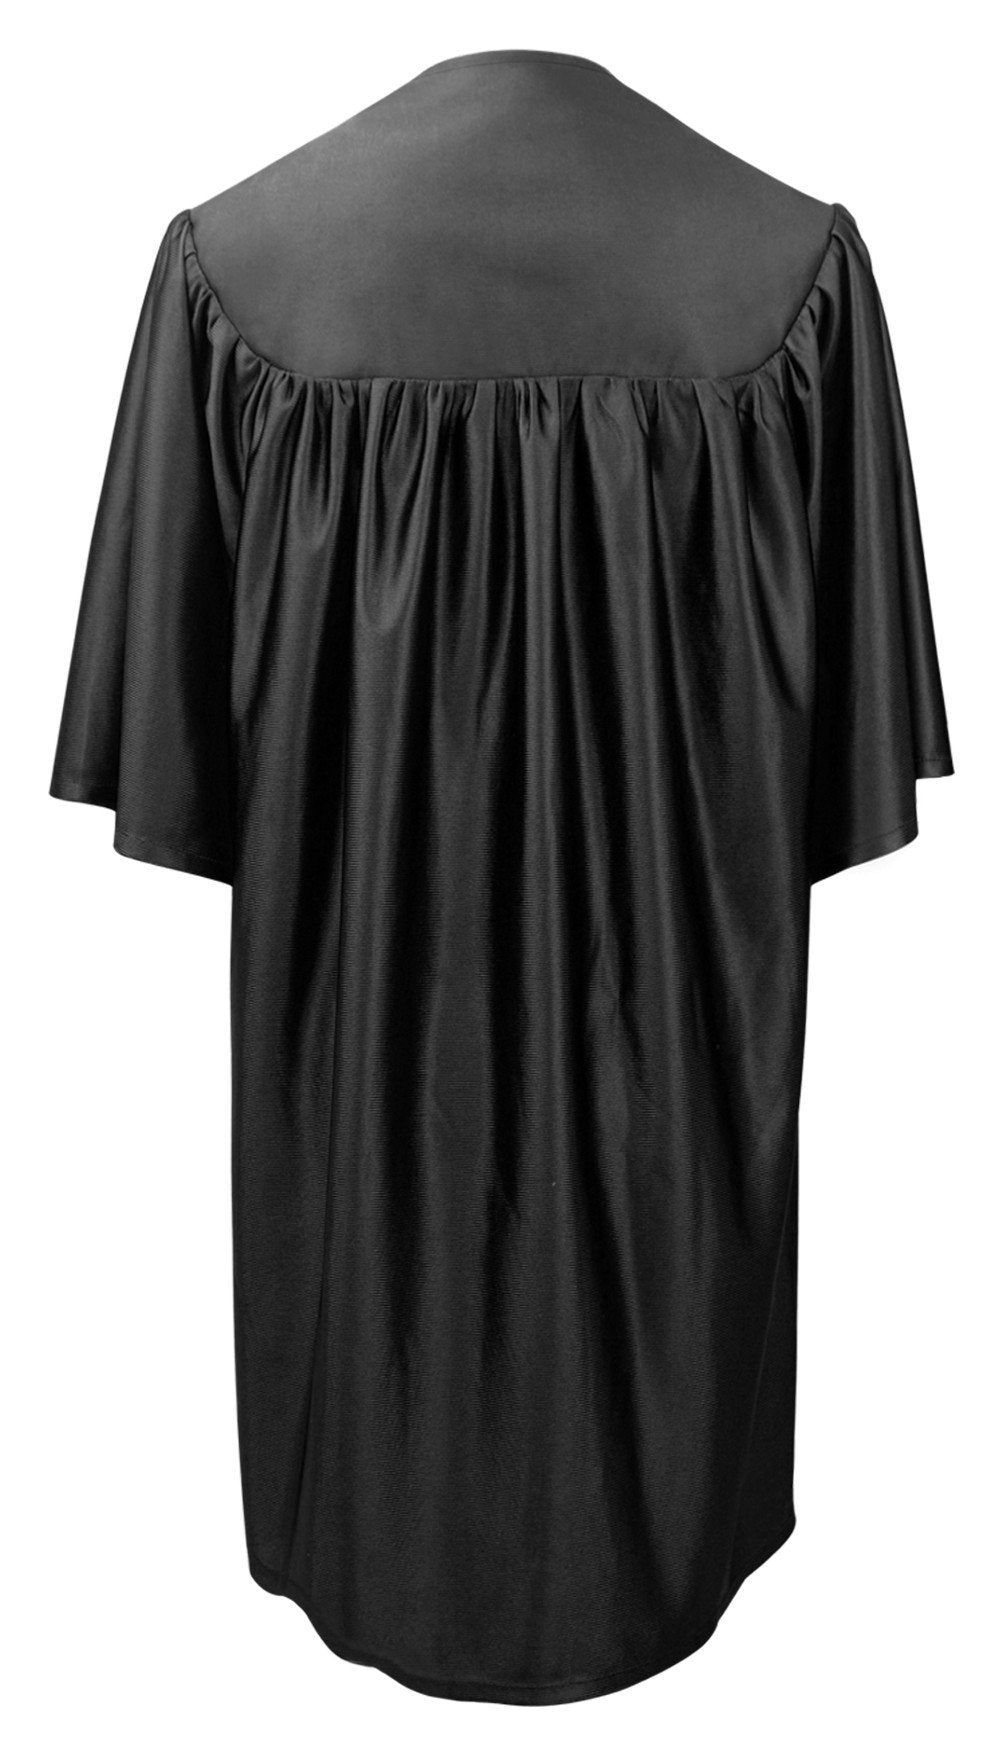 Child's Black Choir Robe - Church Choir Robes - ChoirBuy